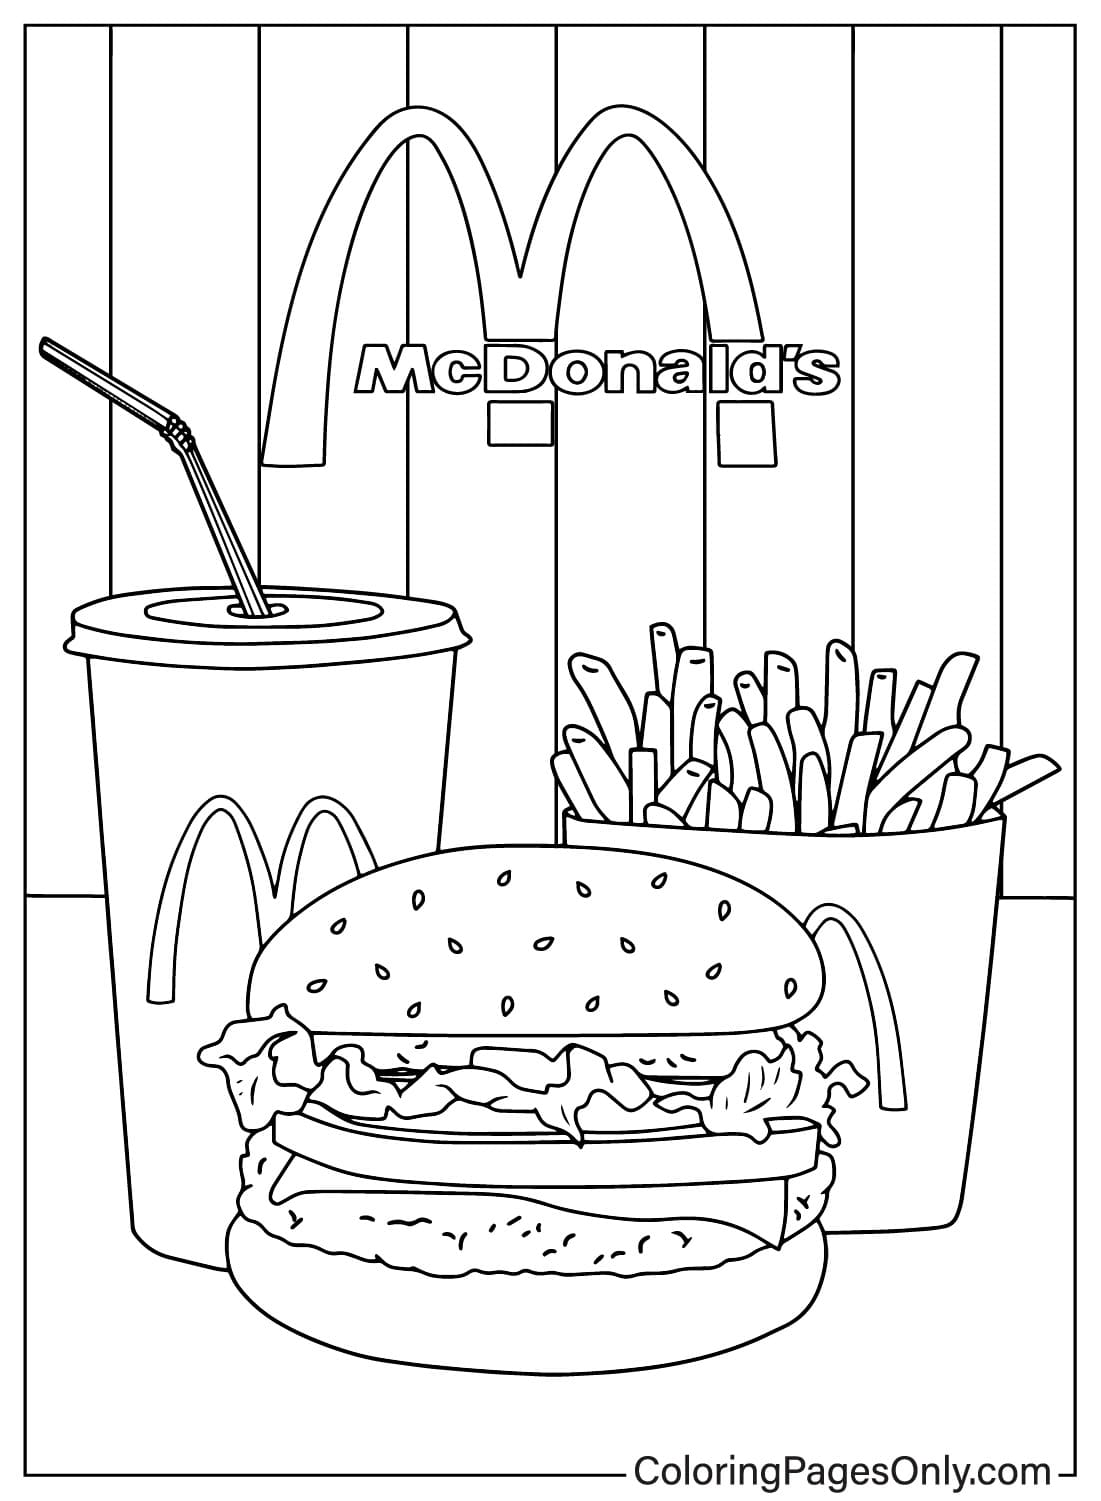 Imagens Página para colorir do McDonalds do McDonald's